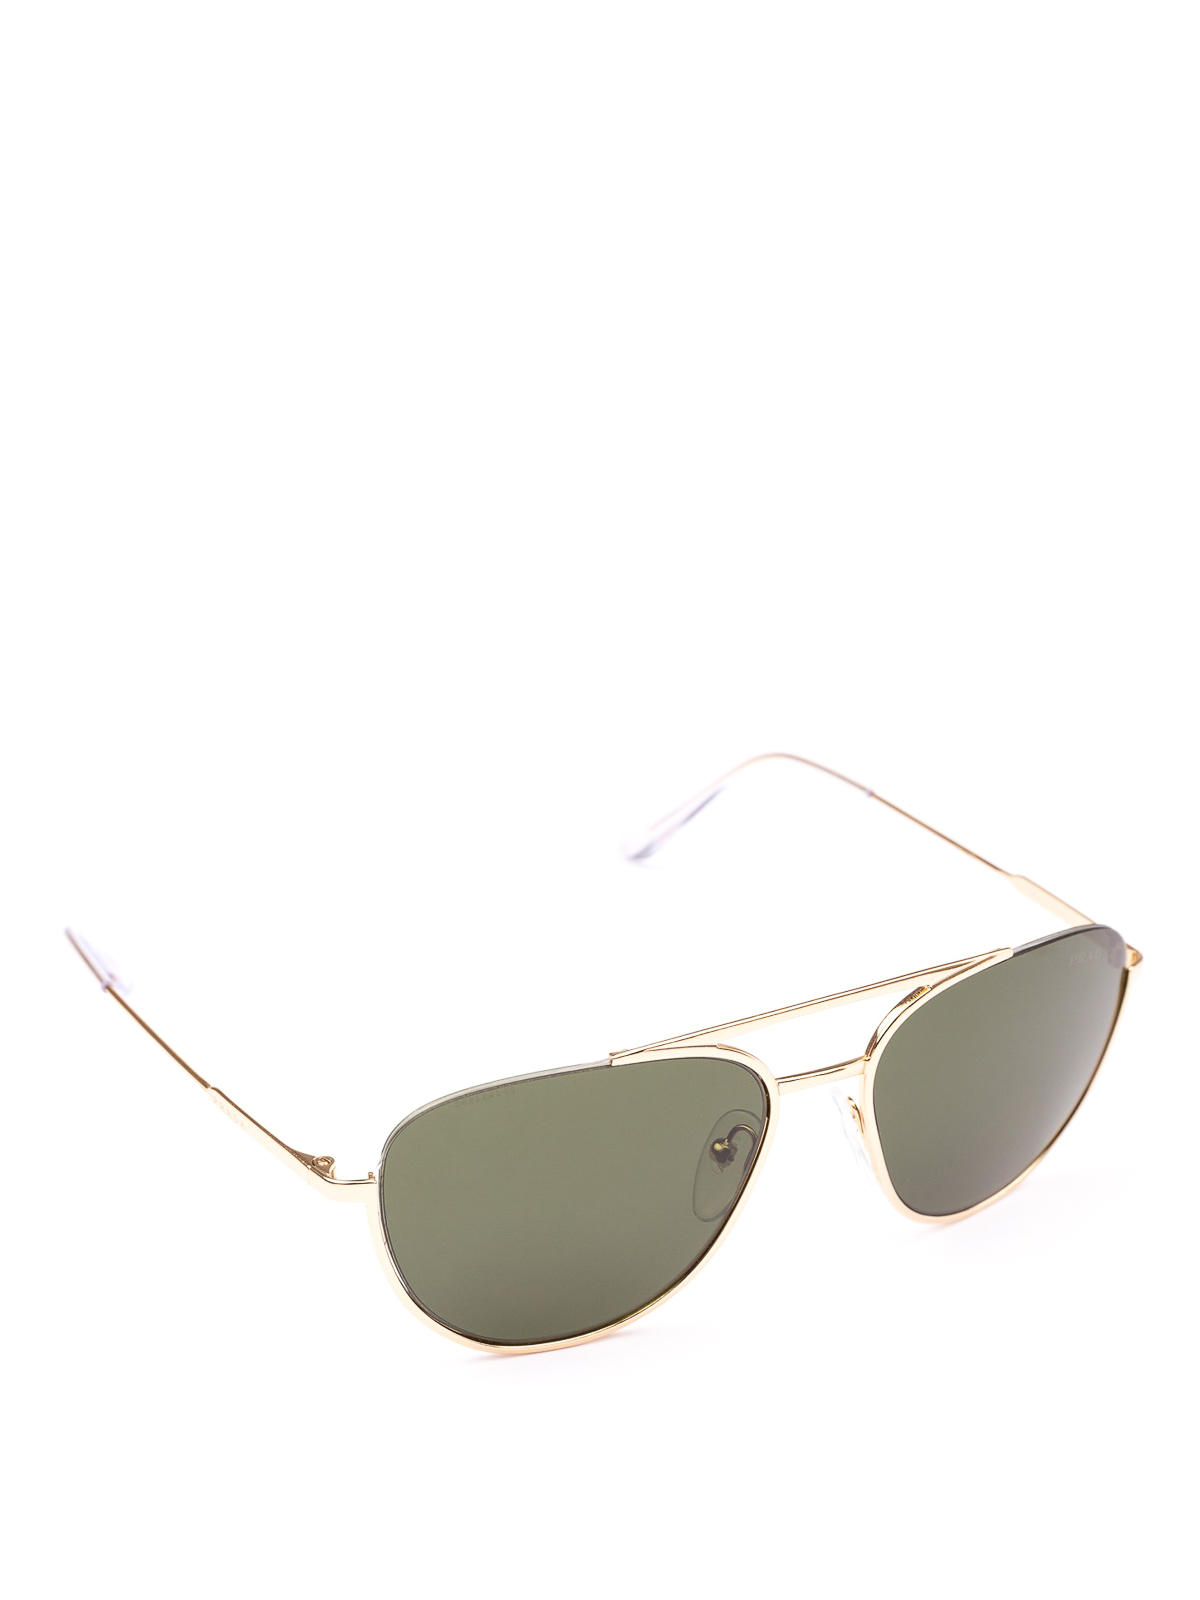 prada gold aviator sunglasses